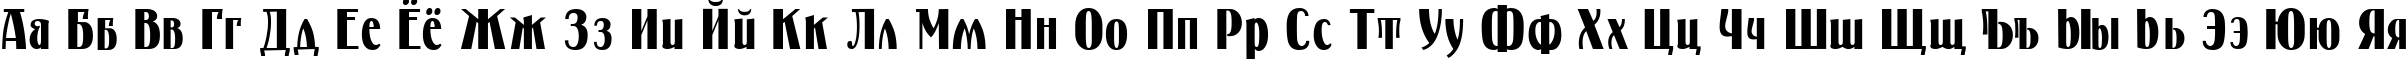 Пример написания русского алфавита шрифтом Petrarka